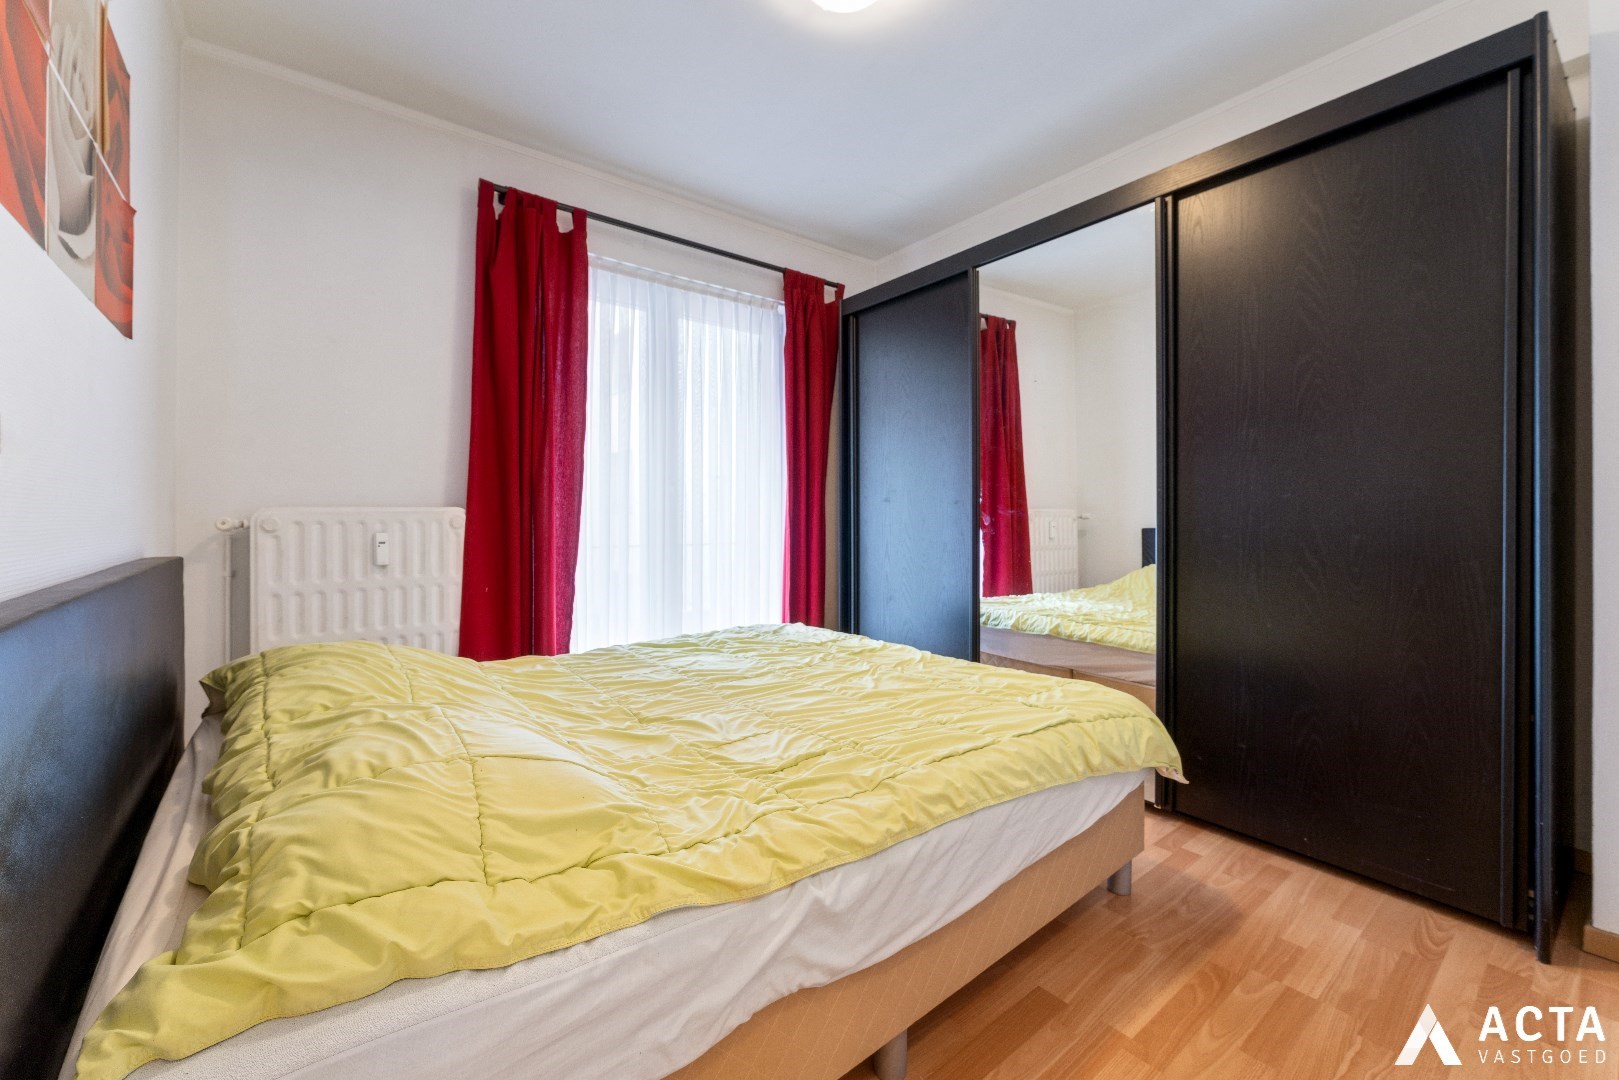 Instapklaar appartement met 2 slaapkamers in centrum Oostende! 